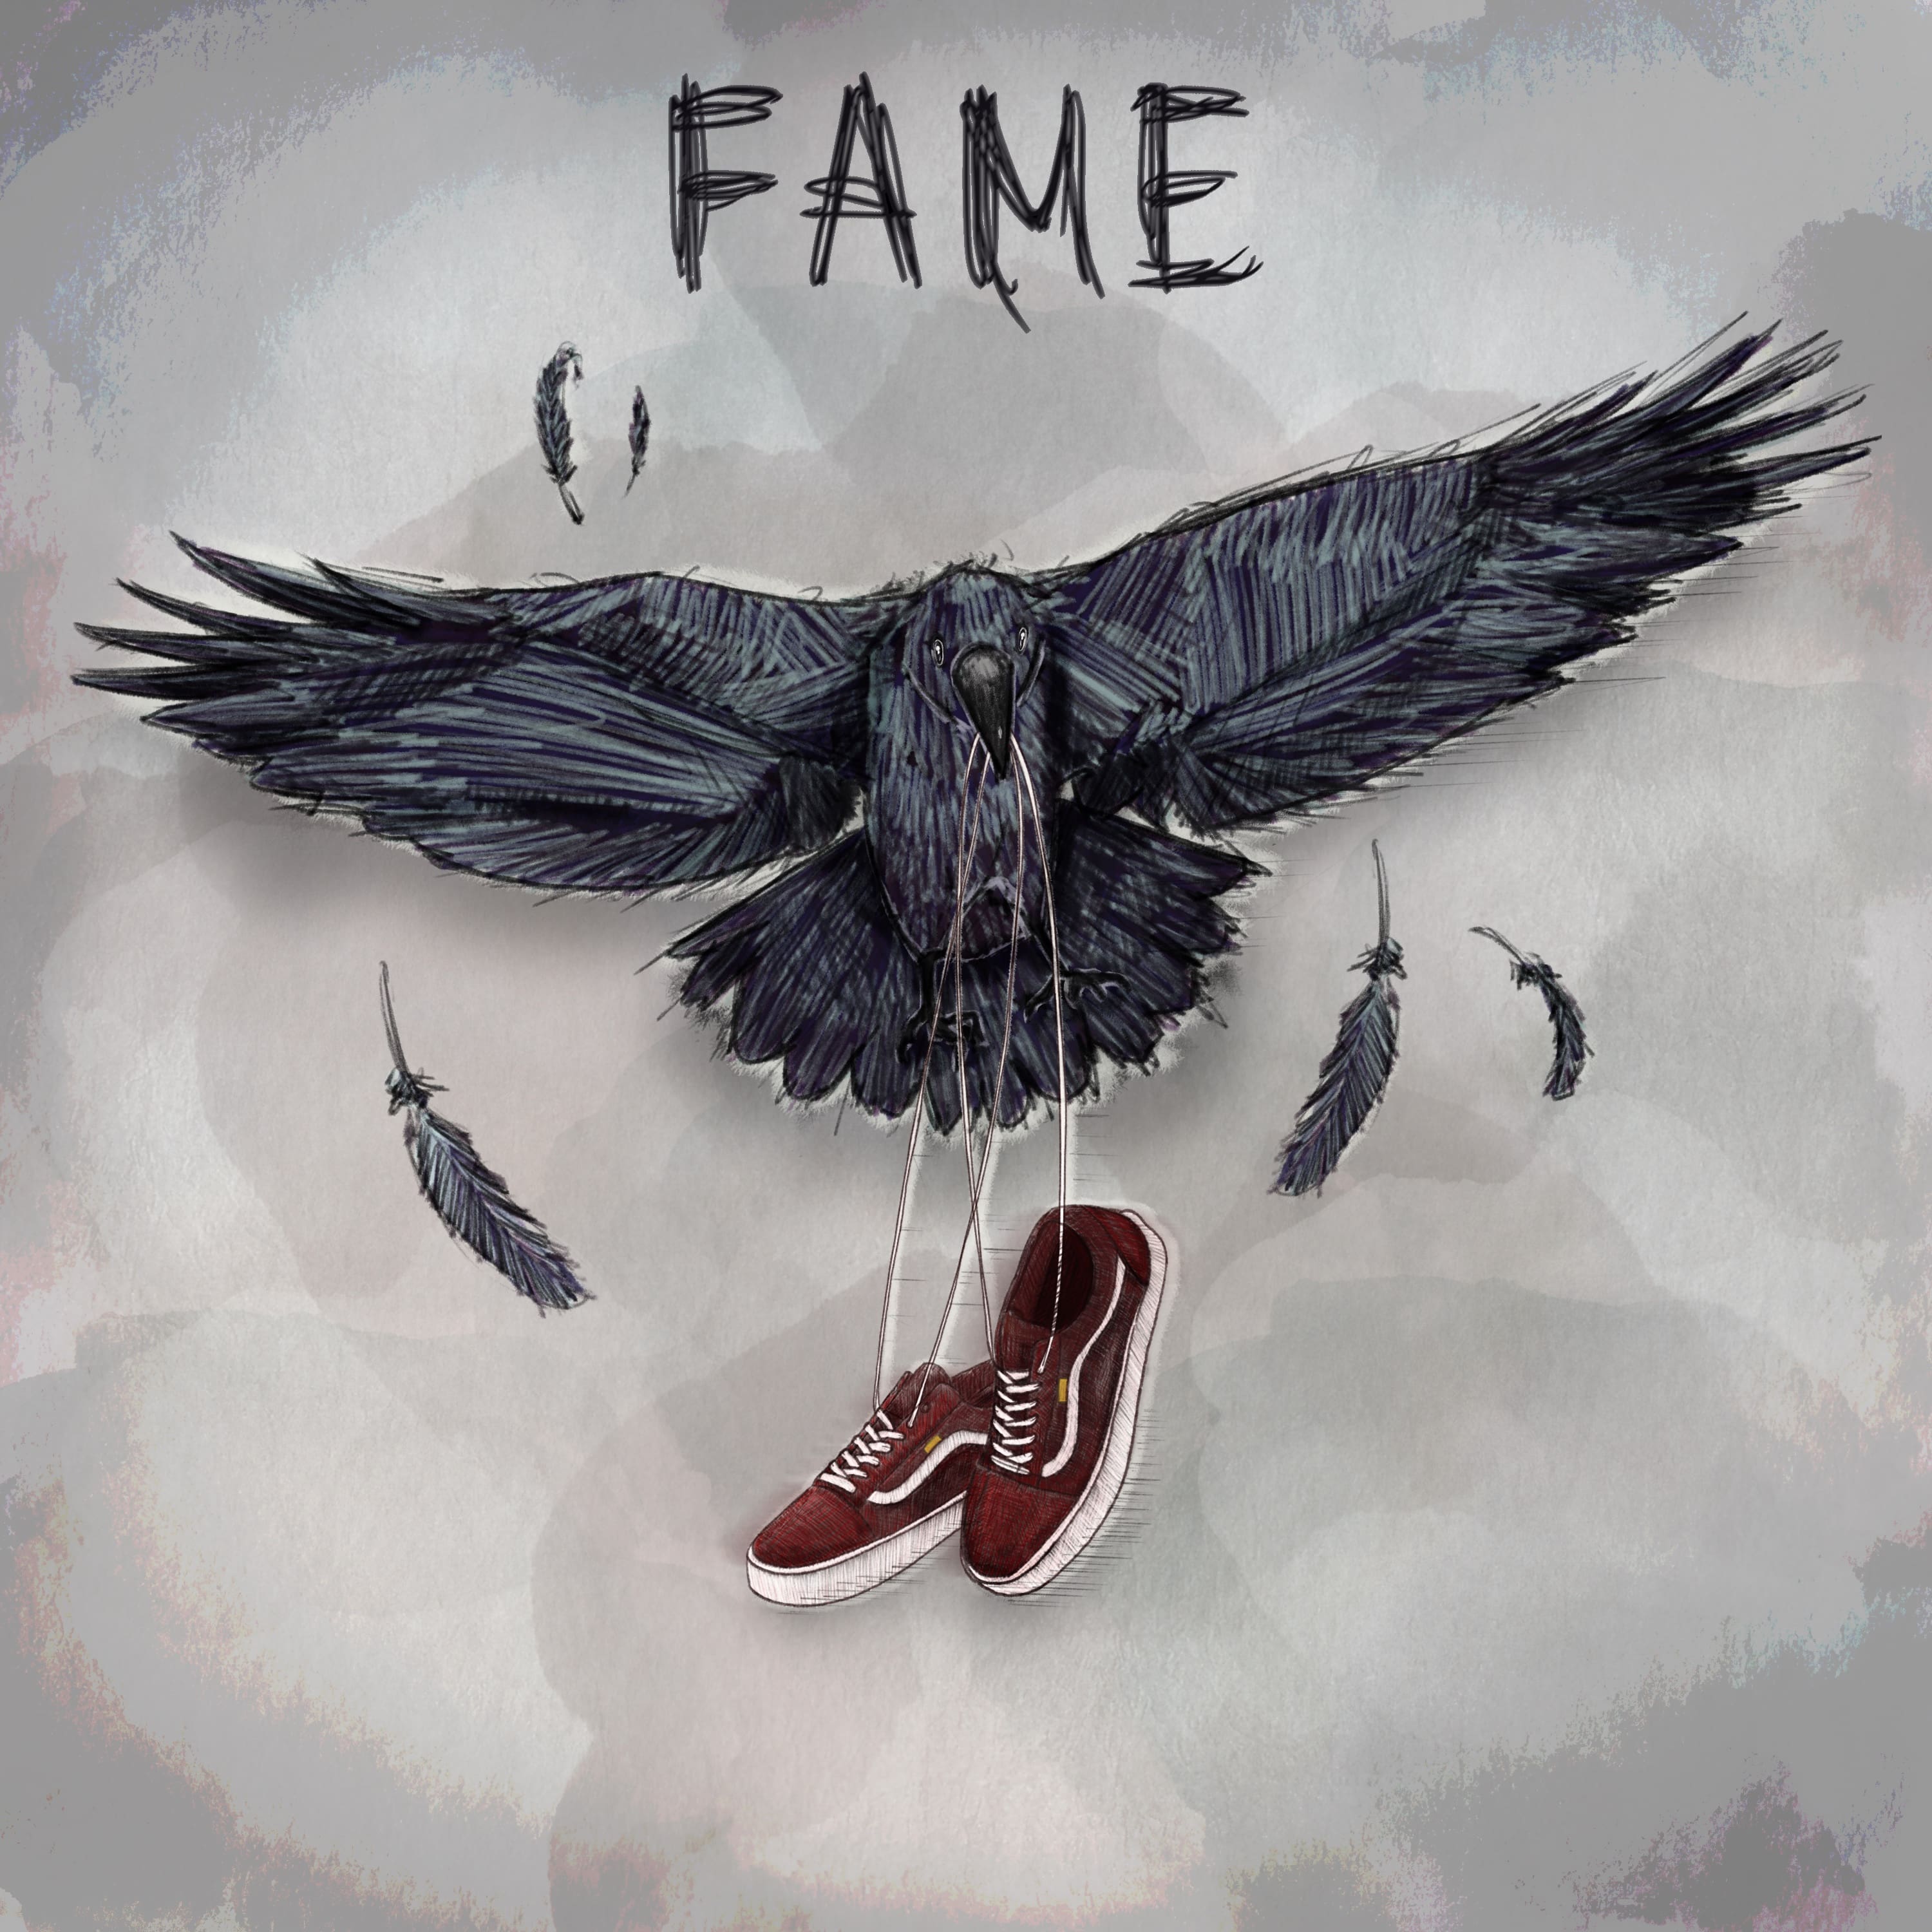 Fame, il nuovo ep degli Urbania [Recensione] 1